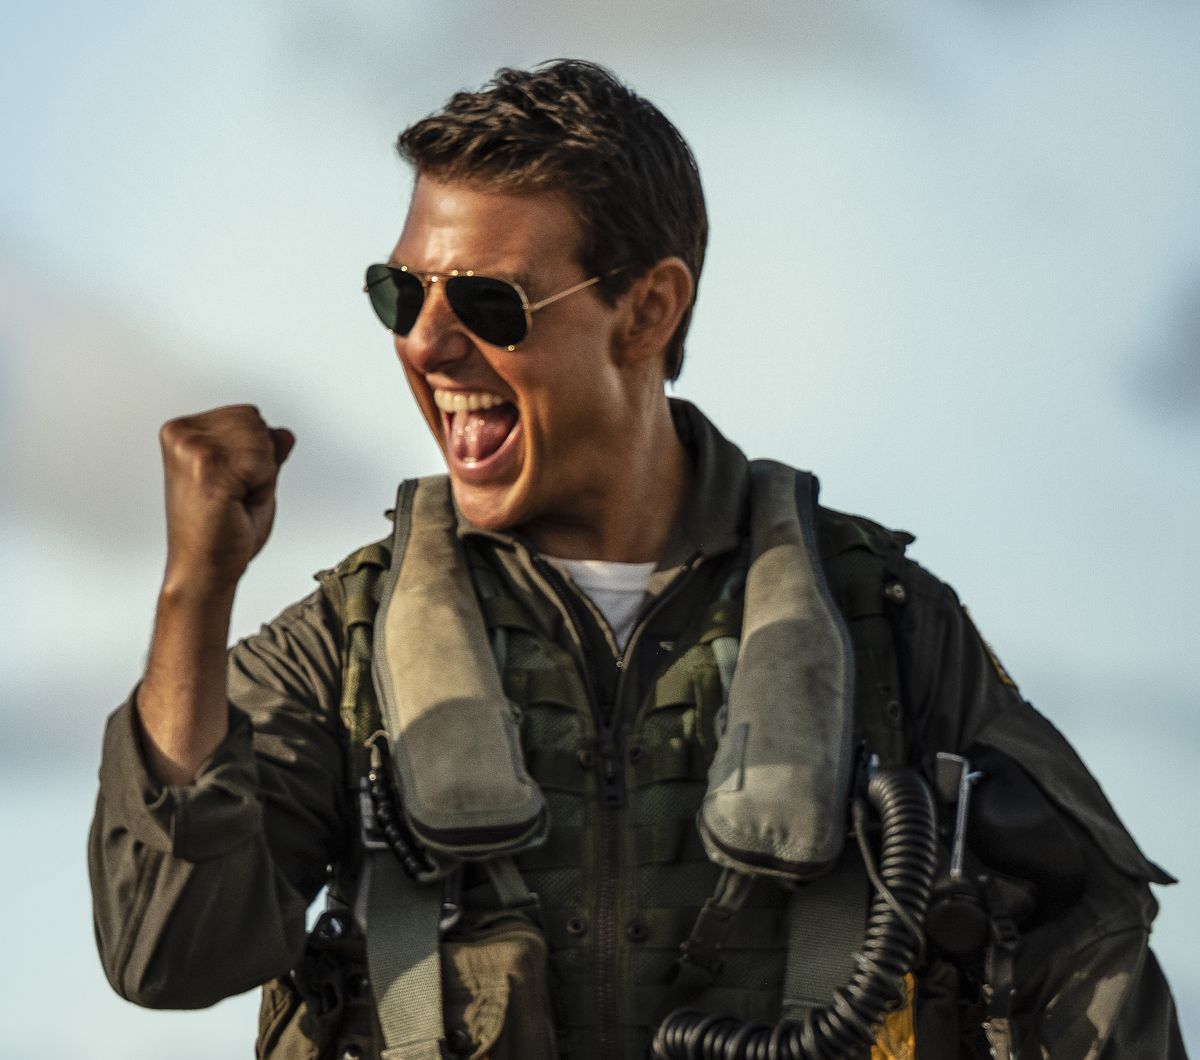 Tom Cruise powraca po 36 latach jako Capt. Pete "Maverick" Mitchell, by szkolić najlepszych amerykańskich pilotów